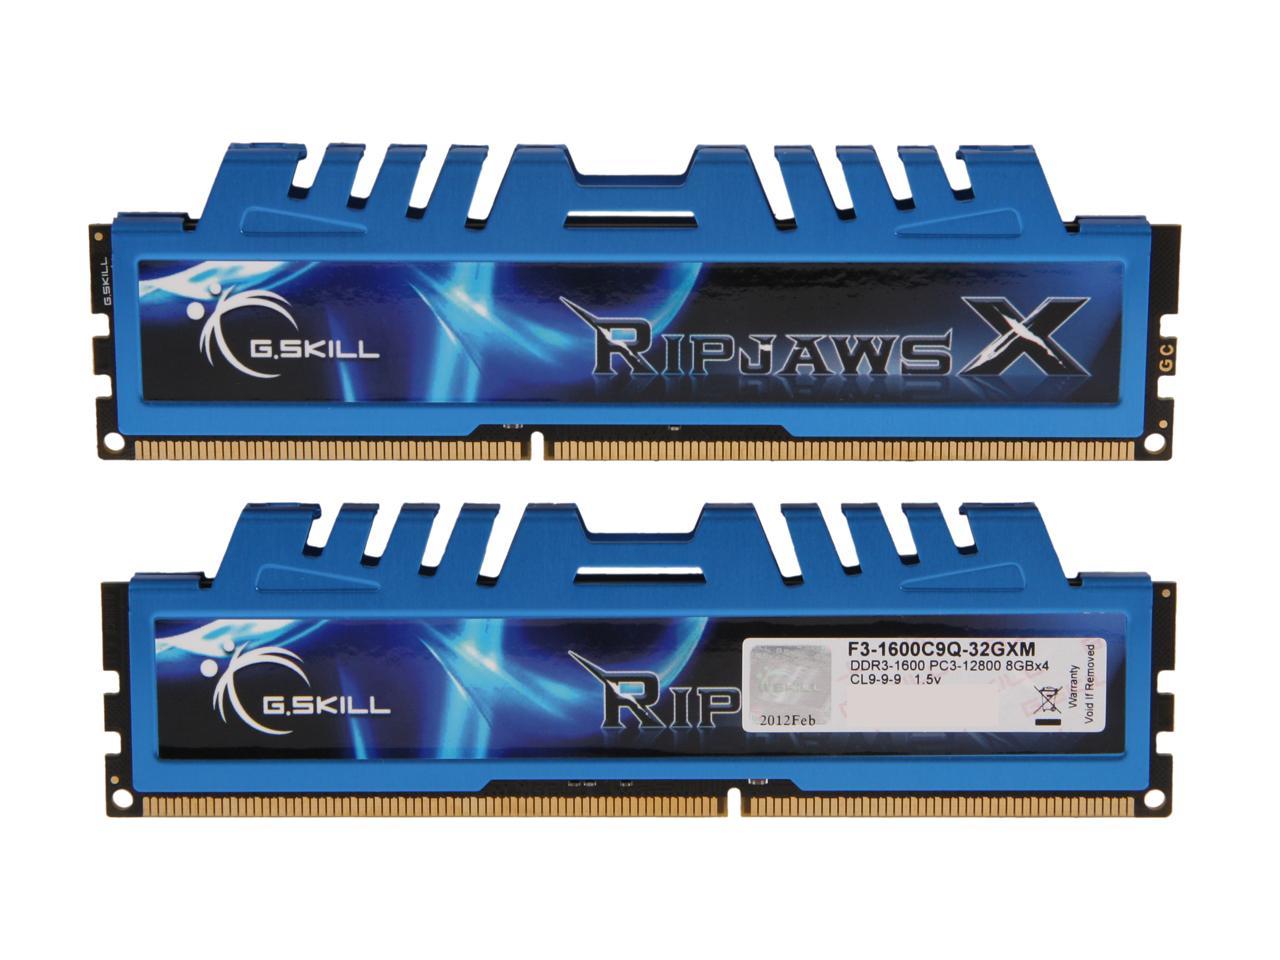 G.SKILL Ripjaws X Series 32GB (4 x 8GB) DDR3 1600 (PC3 12800 